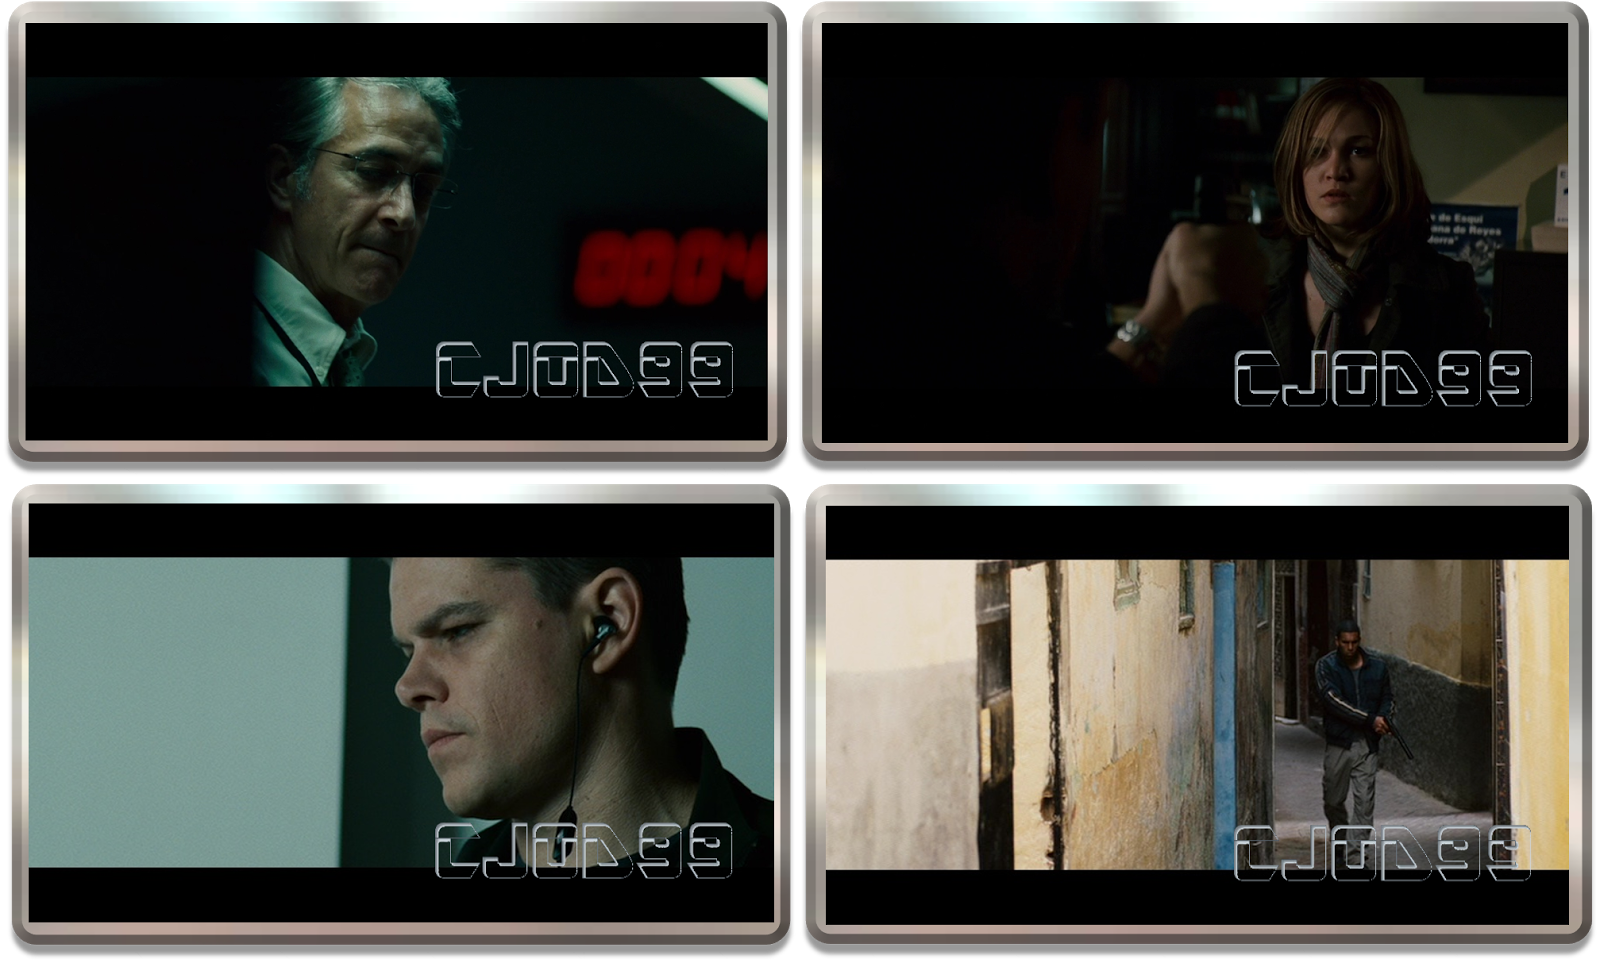 Saga Jason Bourne 1080p Dual 6 Películas 3 Novelas